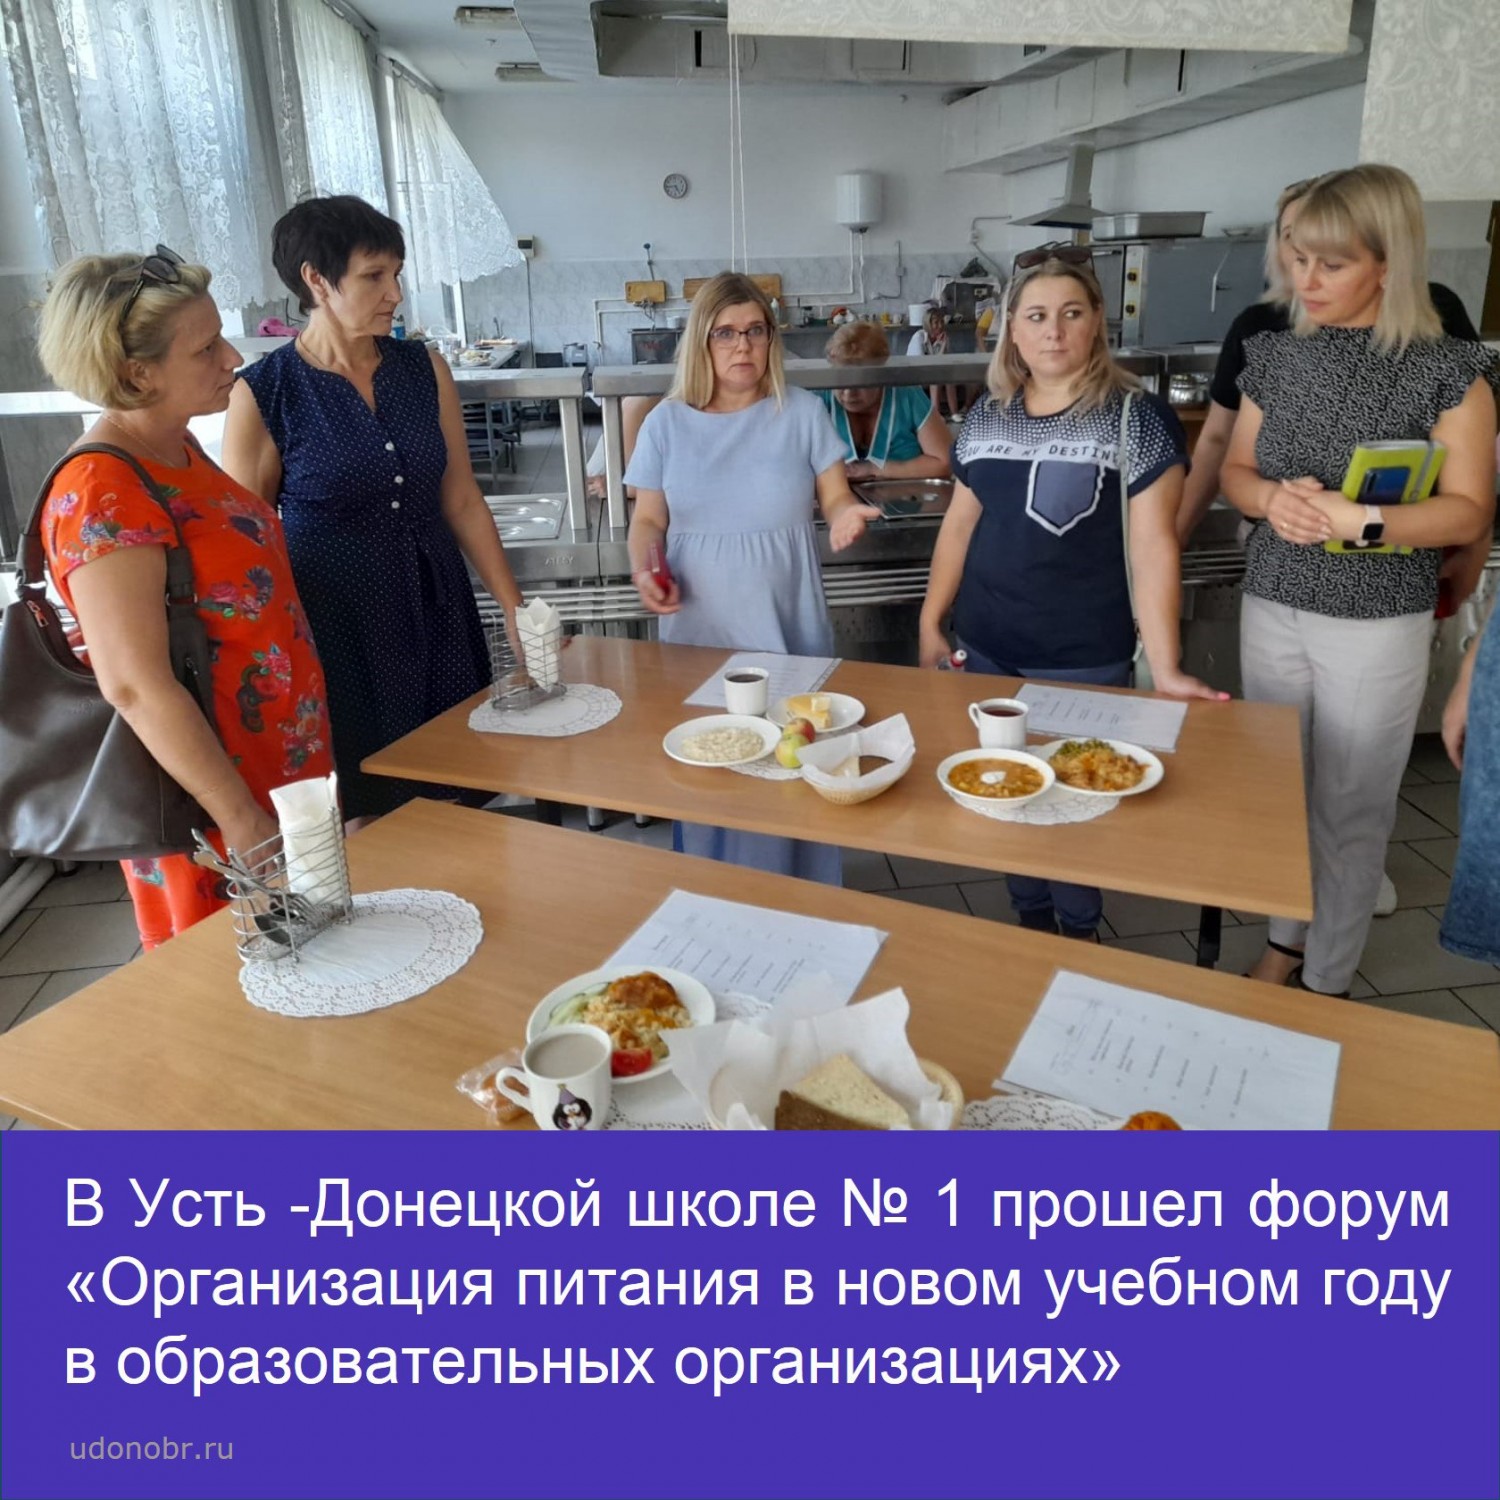 В Усть-Донецкой школе № 1 прошел форум «Организация питания в новом учебном году в образовательных организациях»